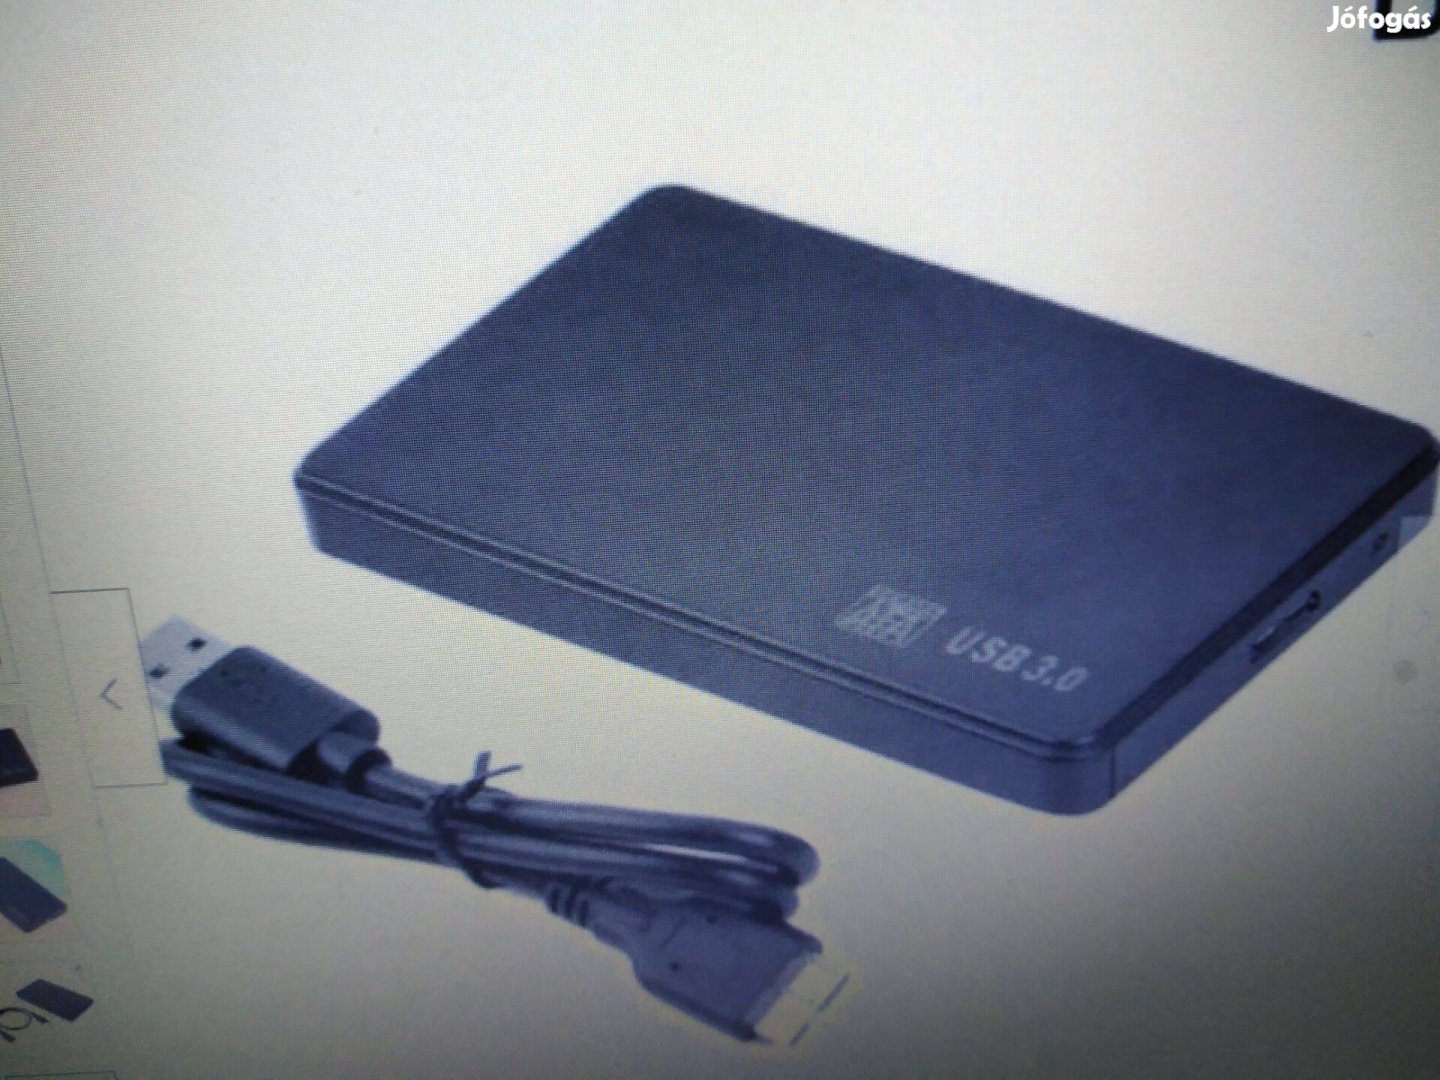 Merevlemez ház 2,5 hüvelykes USB 3.0 SATA-2500FT-Kiárusitás